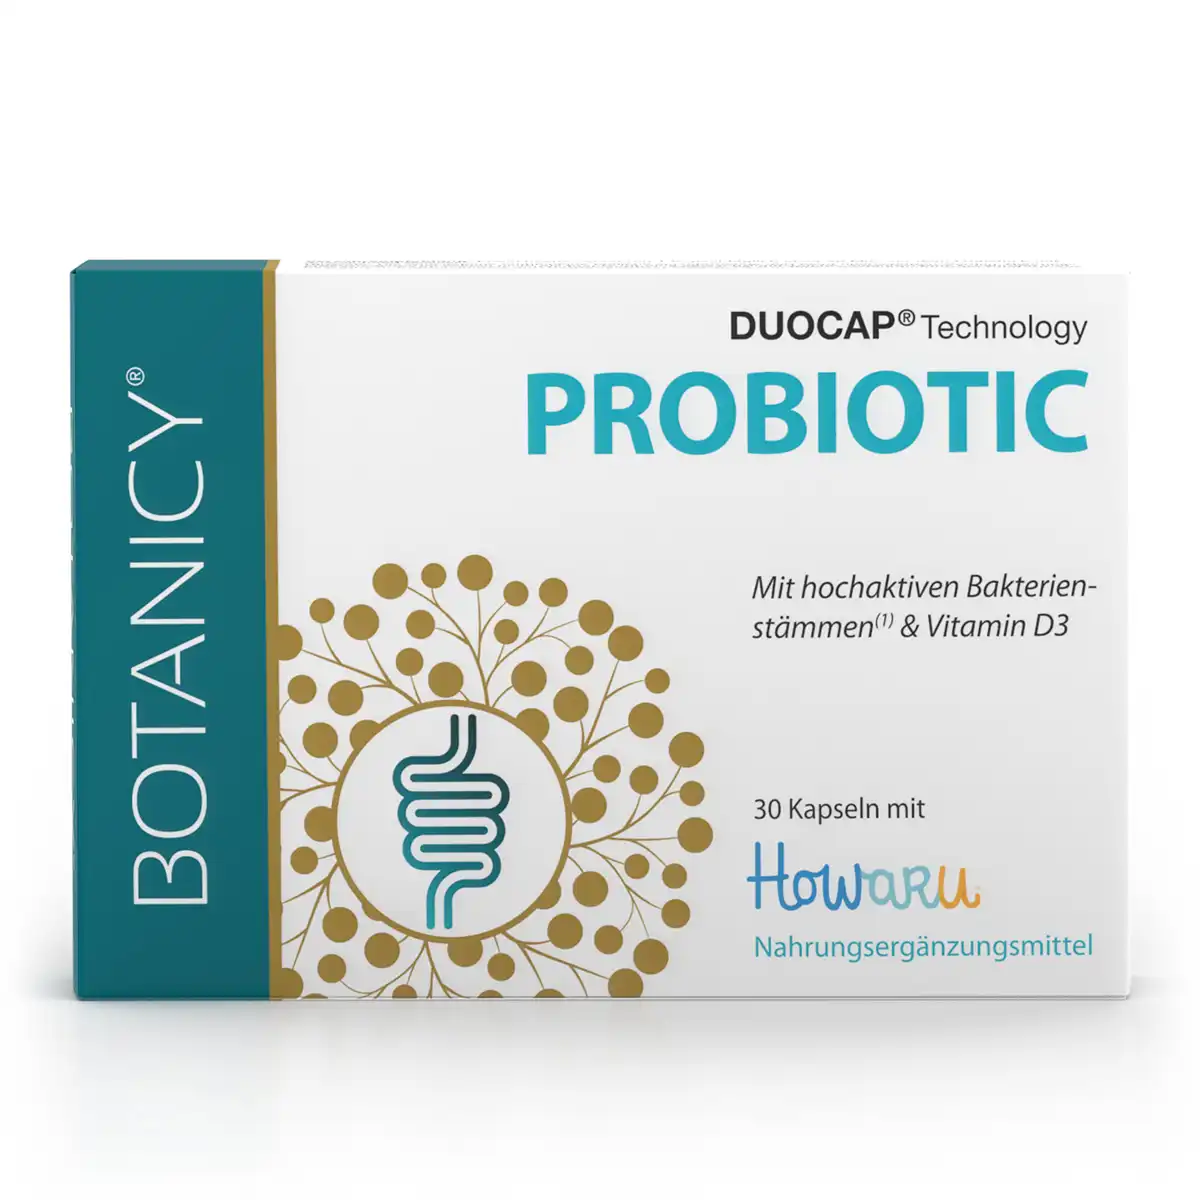 a783-probiotic-duo-caps-01-produkt-1200px-neu